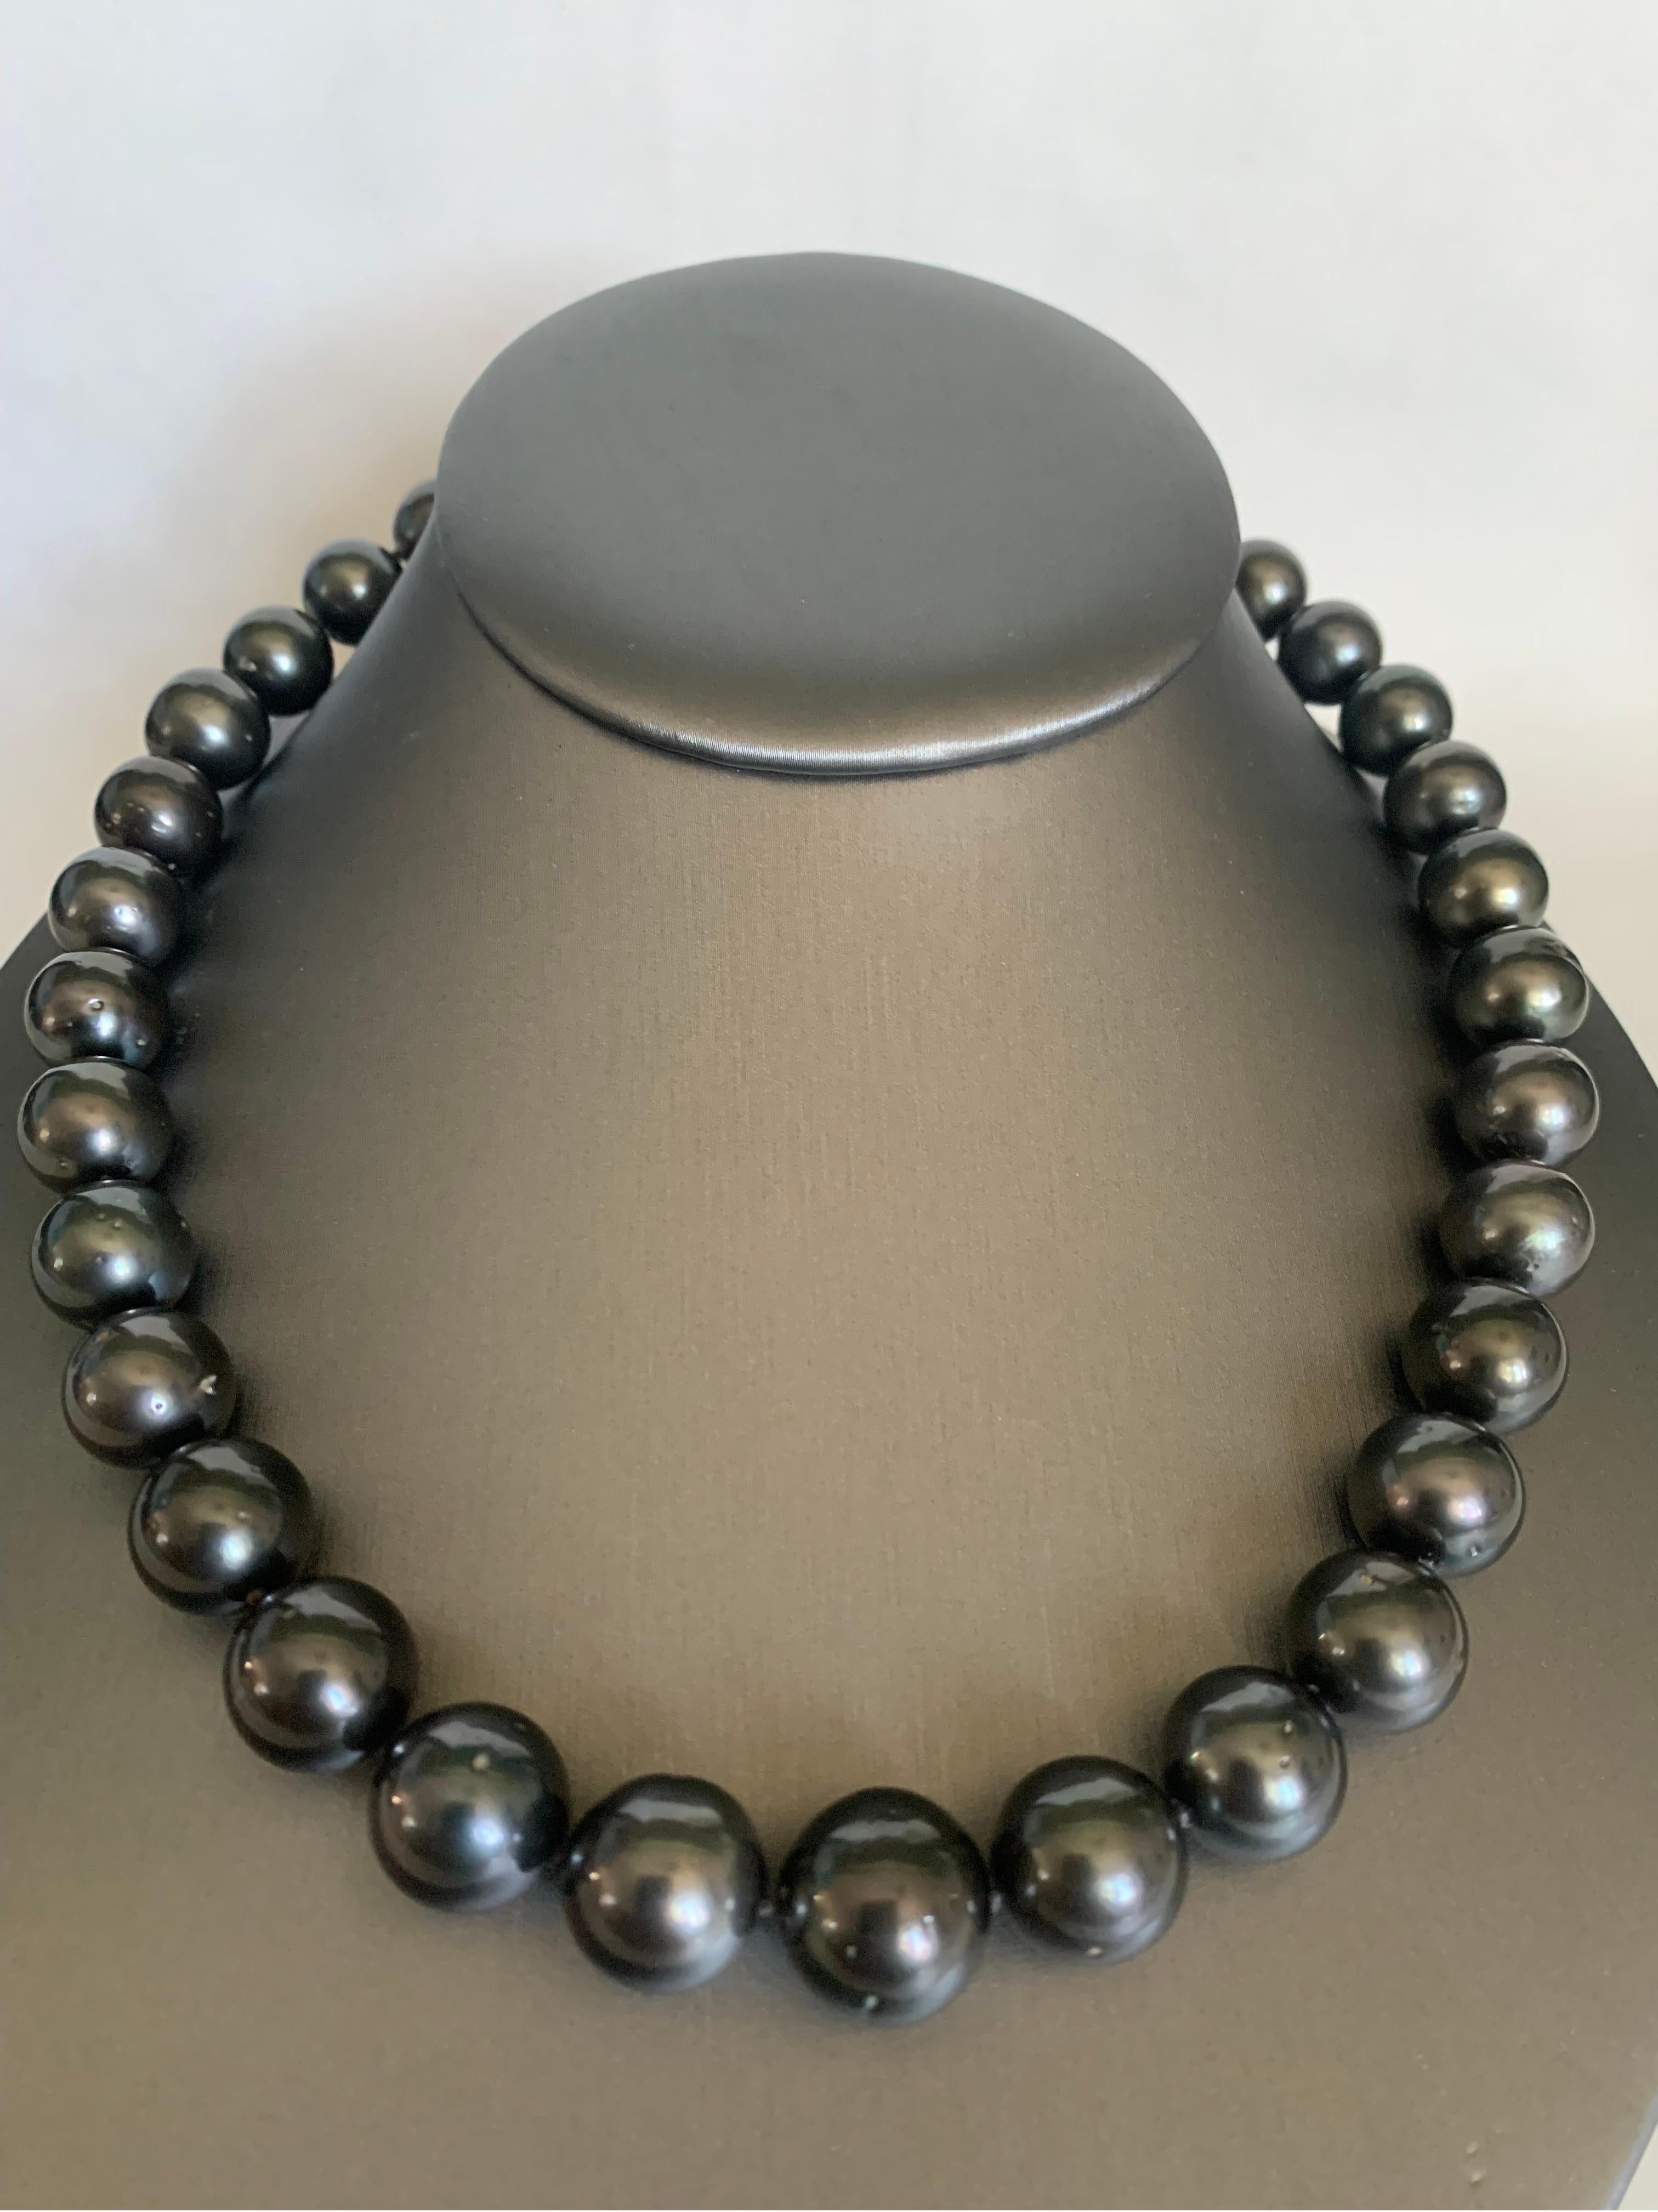 Werten Sie Ihren Look mit einer zeitlosen, abgestuften Perlenkette auf. Diese 18-18,5 Zoll lange Strangkette ist vollständig geknotet und von Hand mit passender Seidenkordel aufgefädelt. Die Halskette besteht aus 33 lebhaft glänzenden dunklen